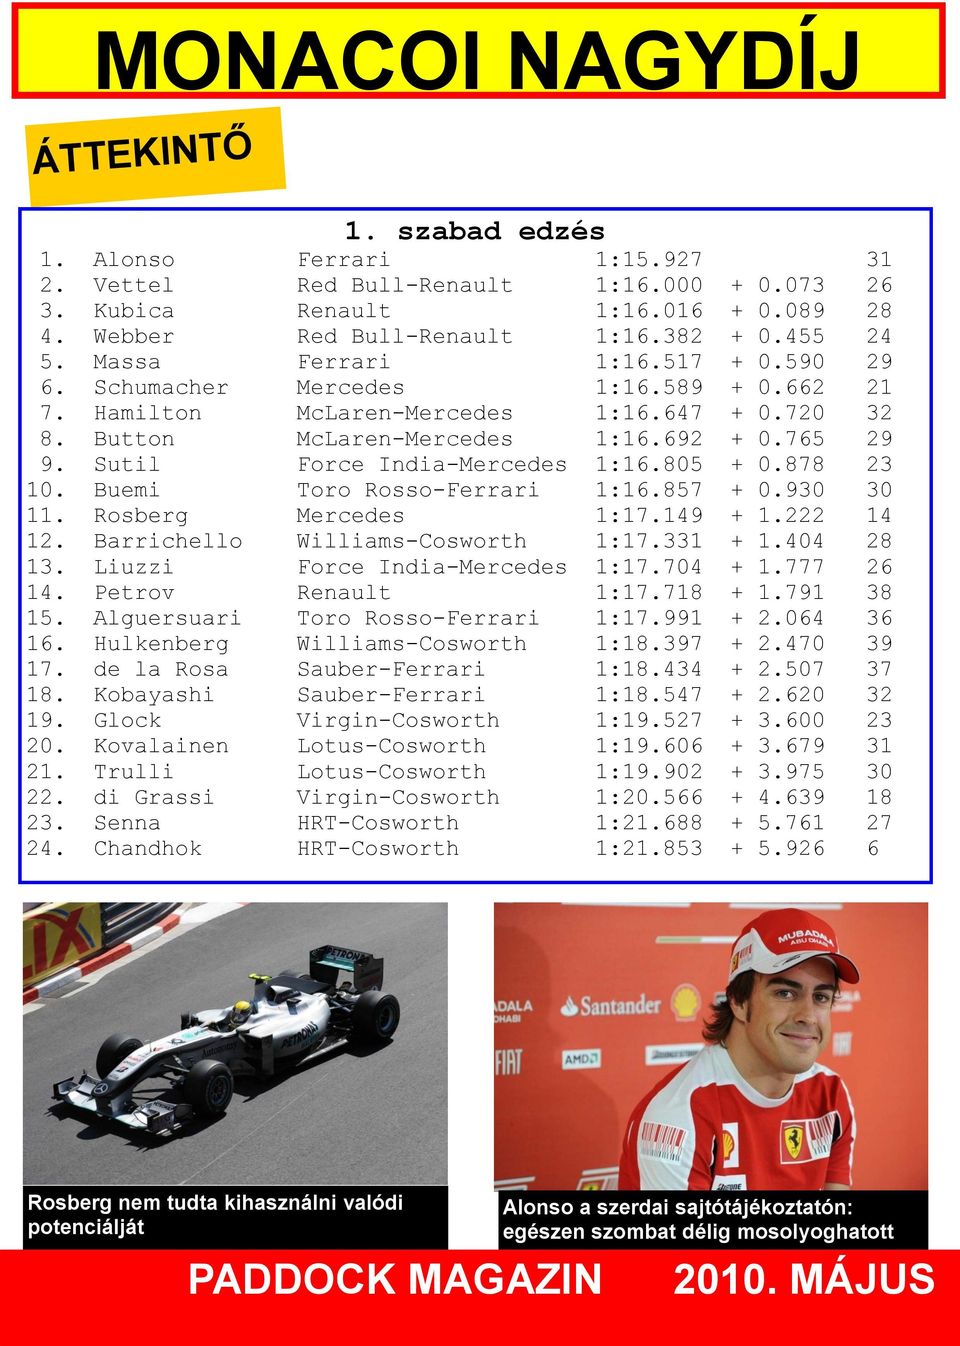 Sutil Force India-Mercedes 1:16.805 + 0.878 23 10. Buemi Toro Rosso-Ferrari 1:16.857 + 0.930 30 11. Rosberg Mercedes 1:17.149 + 1.222 14 12. Barrichello Williams-Cosworth 1:17.331 + 1.404 28 13.